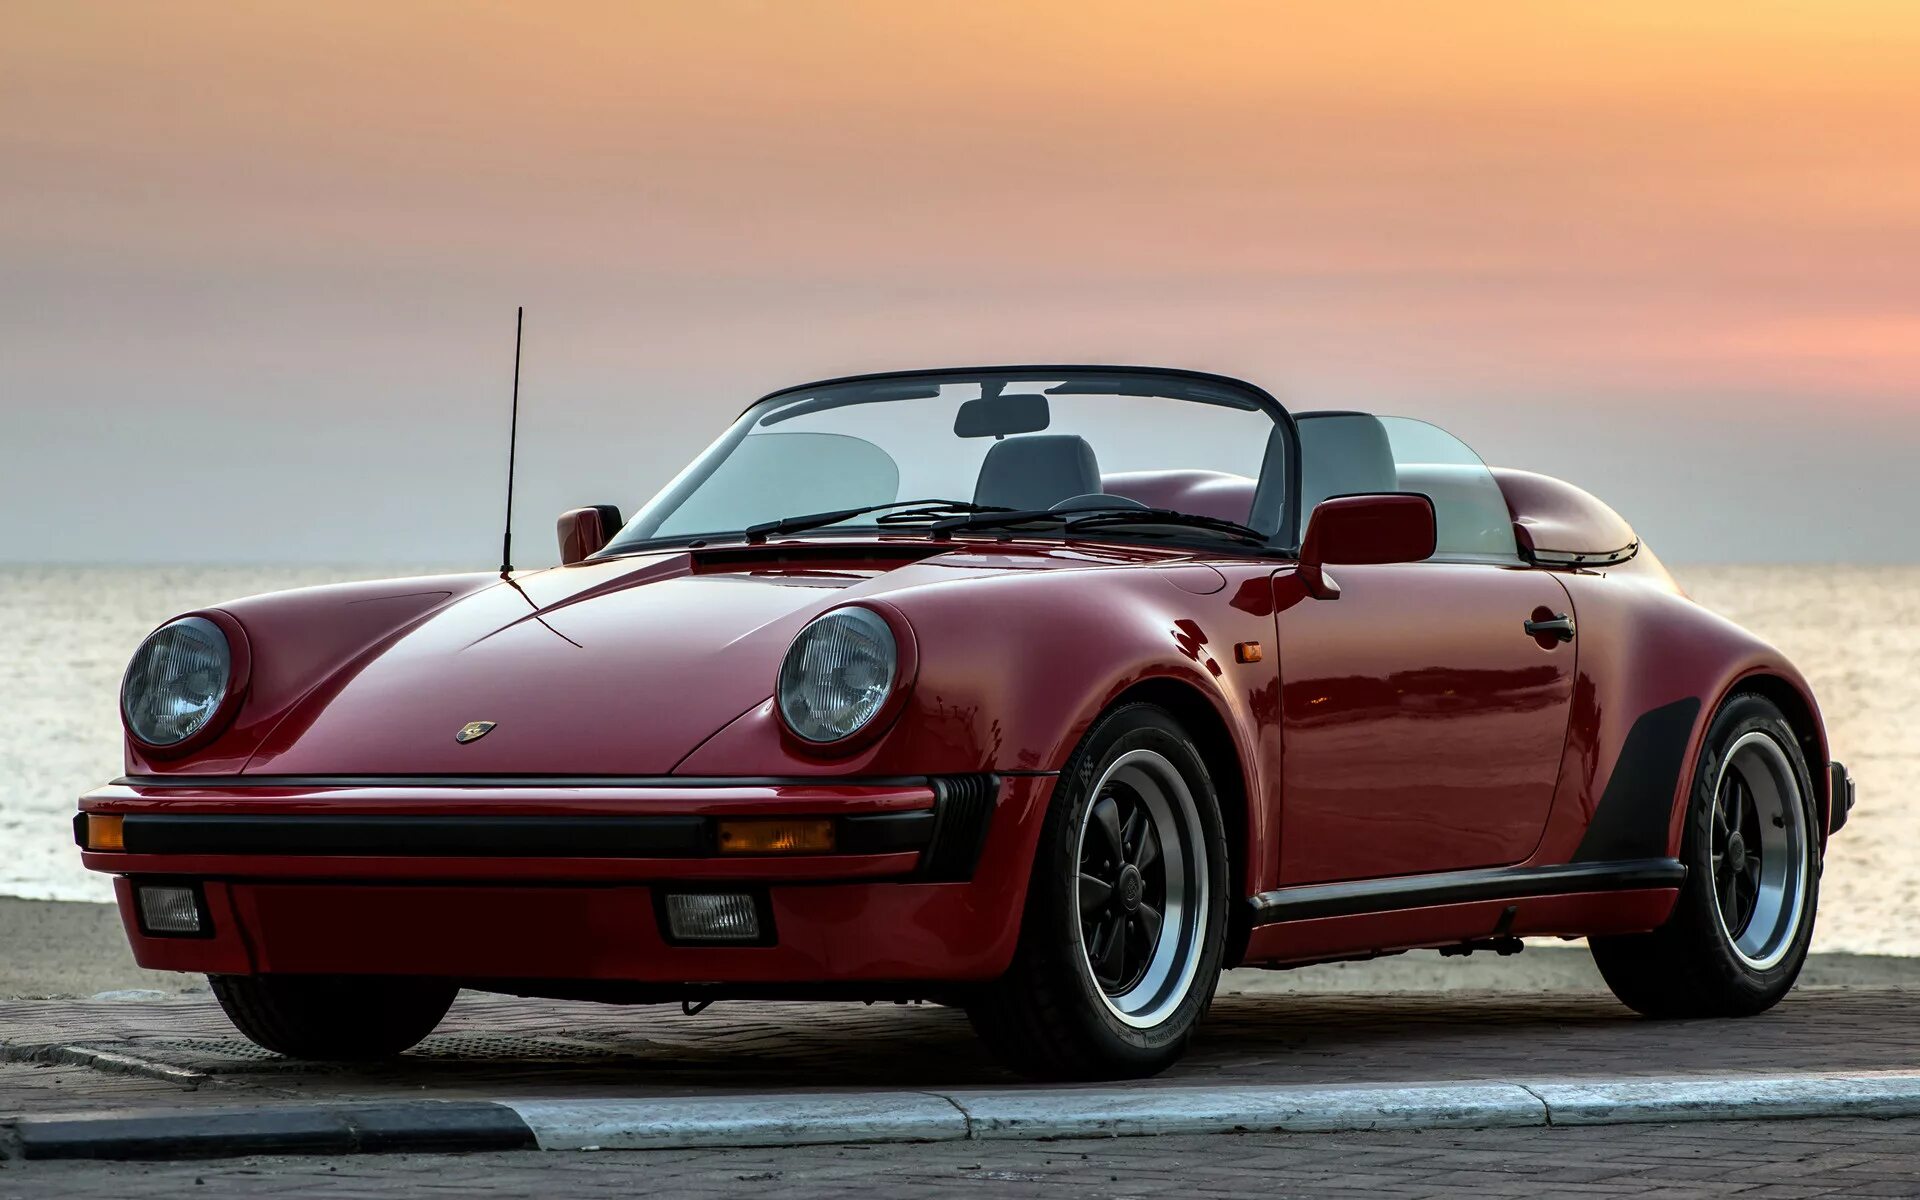 Porsche speedster. Порше спидстер. 911 Speedster. Porsche Speedster Turbo 1989. 1989 Porsche 911 'Turbo look' Speedster.